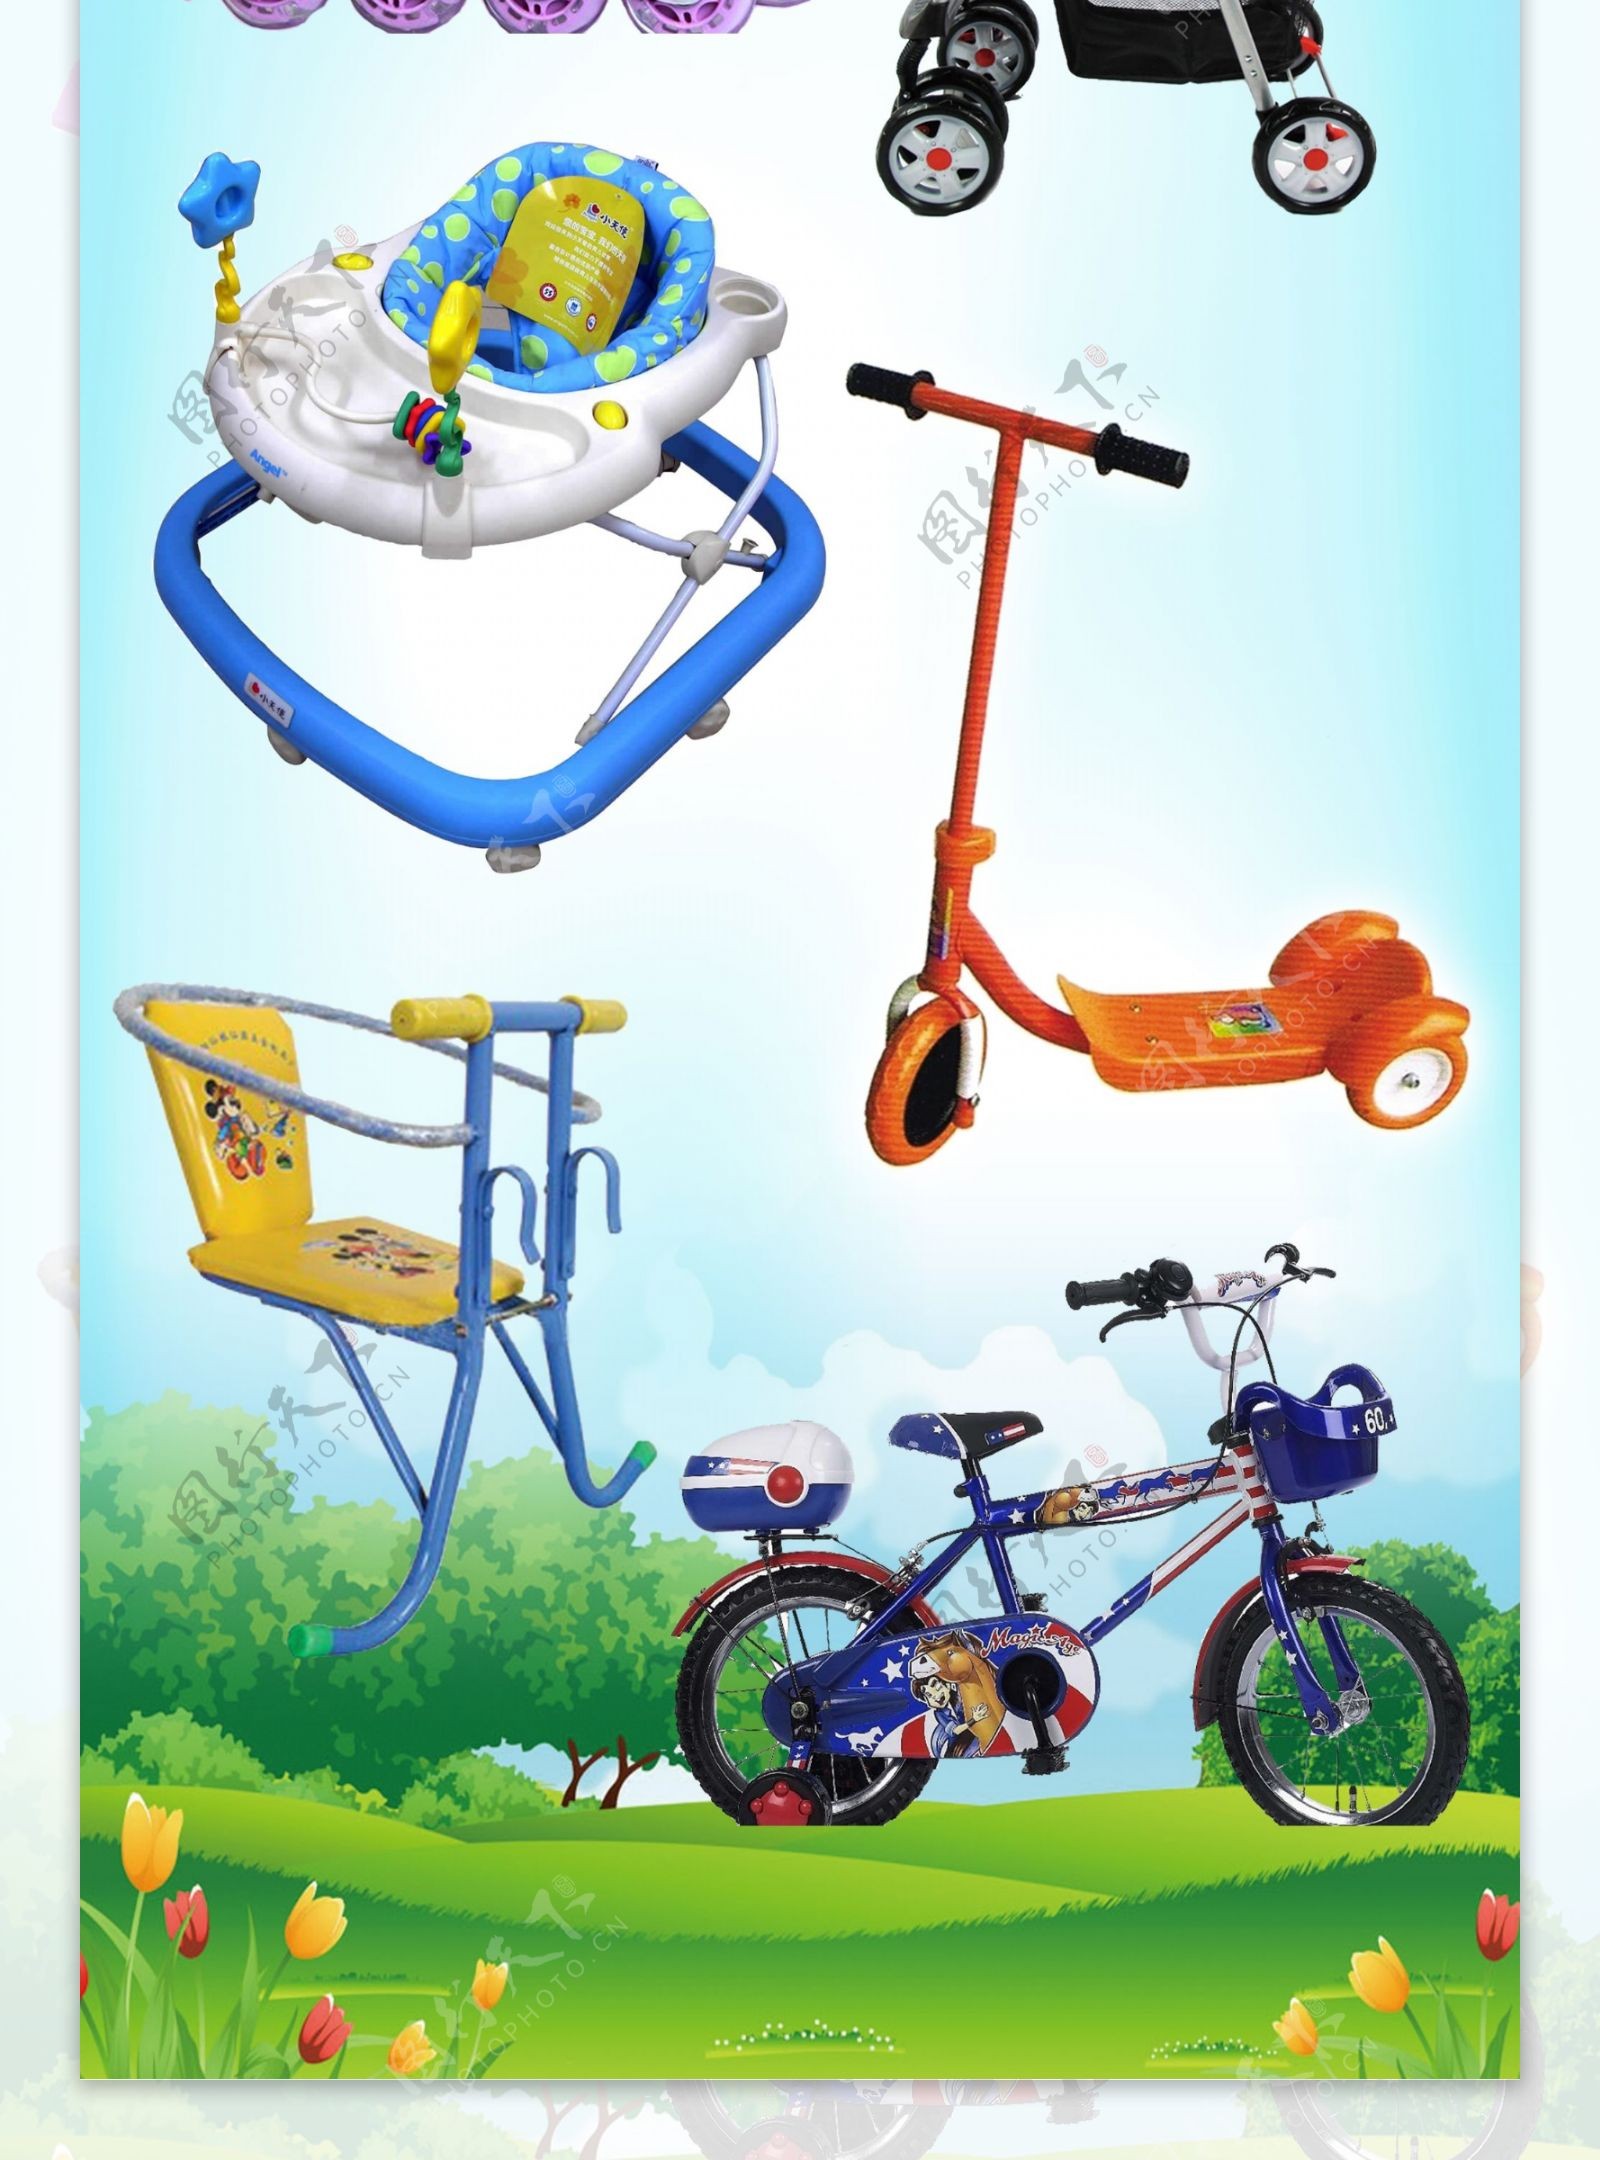 童车婴儿车儿童自行车摩托